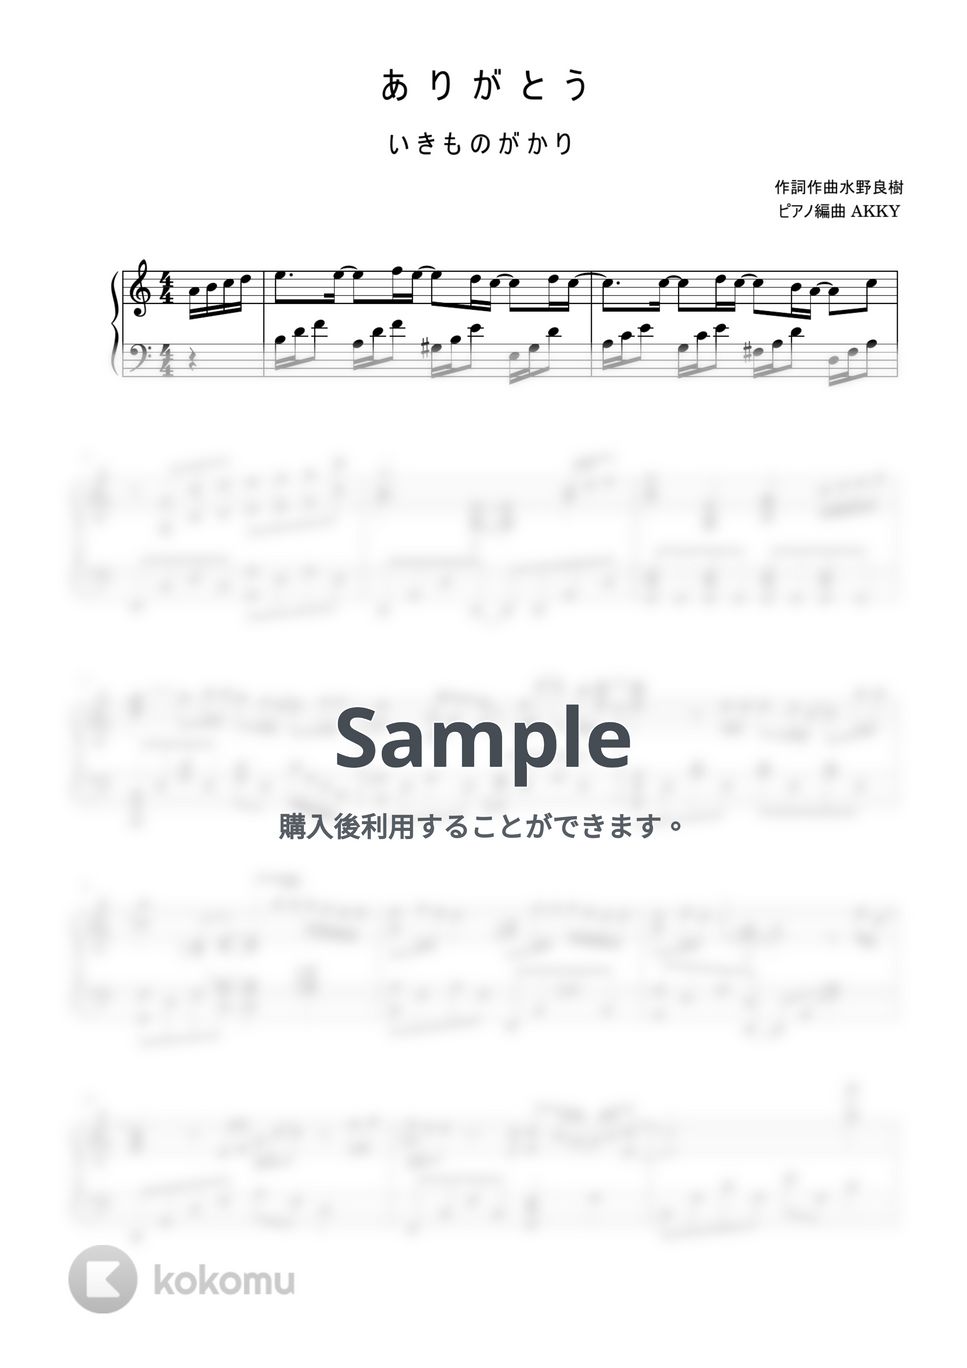 いきものがかり - ありがとう (ピアノ / いきものがかり / ピアノソロ) by AKKY